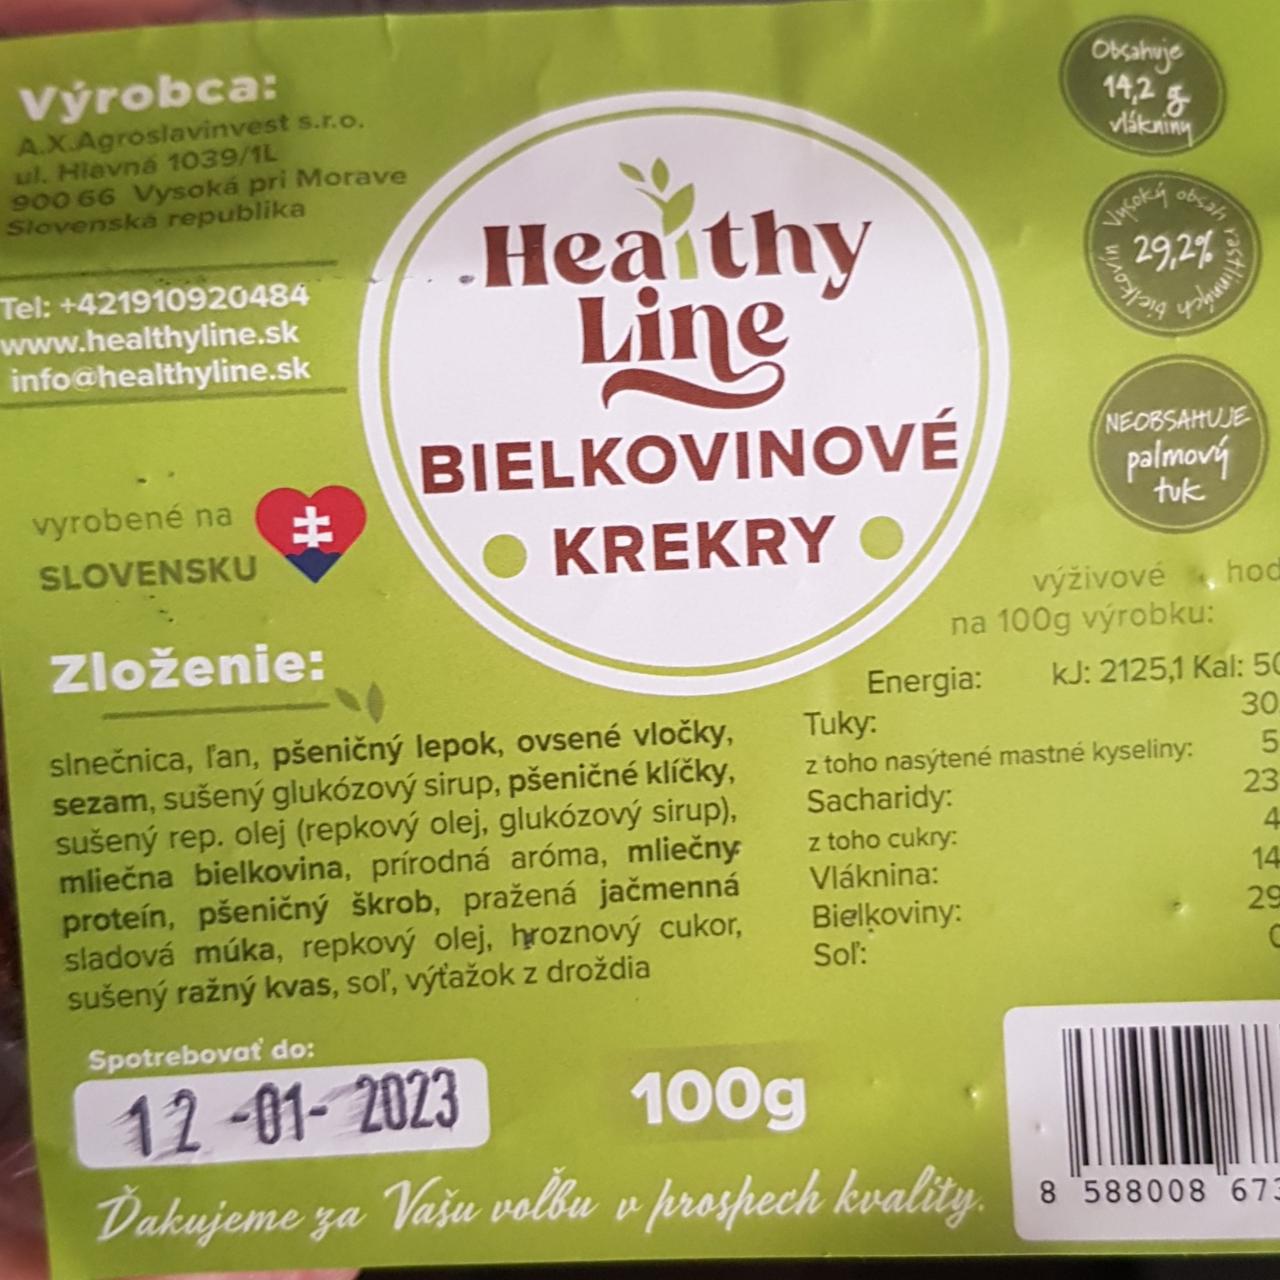 Fotografie - Bielkovinove krekry Healthy line